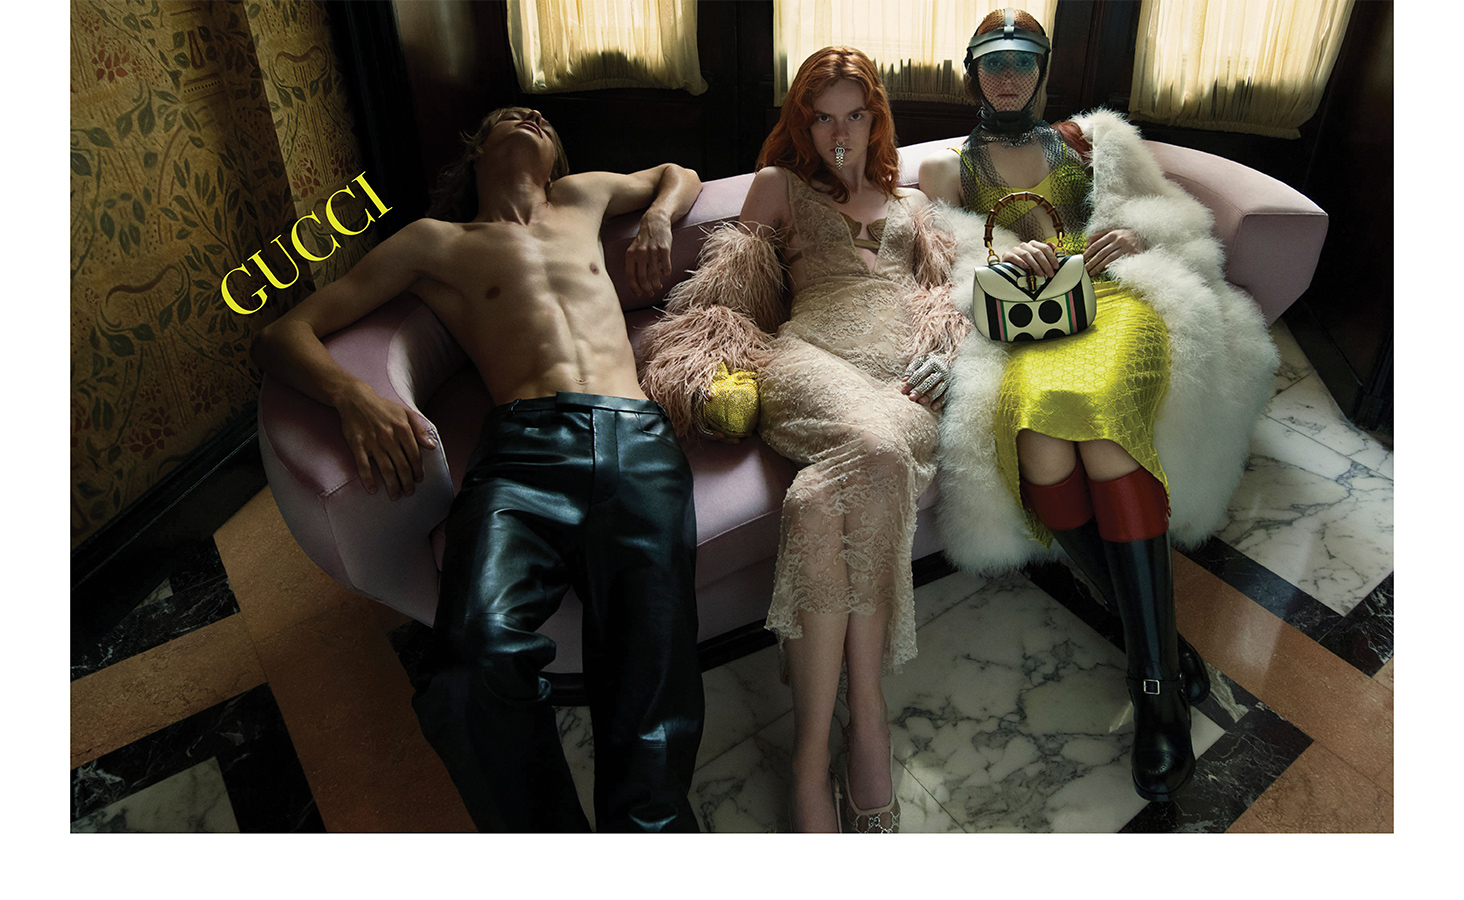 gucci - Orlando Style Magazine - The Luxury Lifestyle